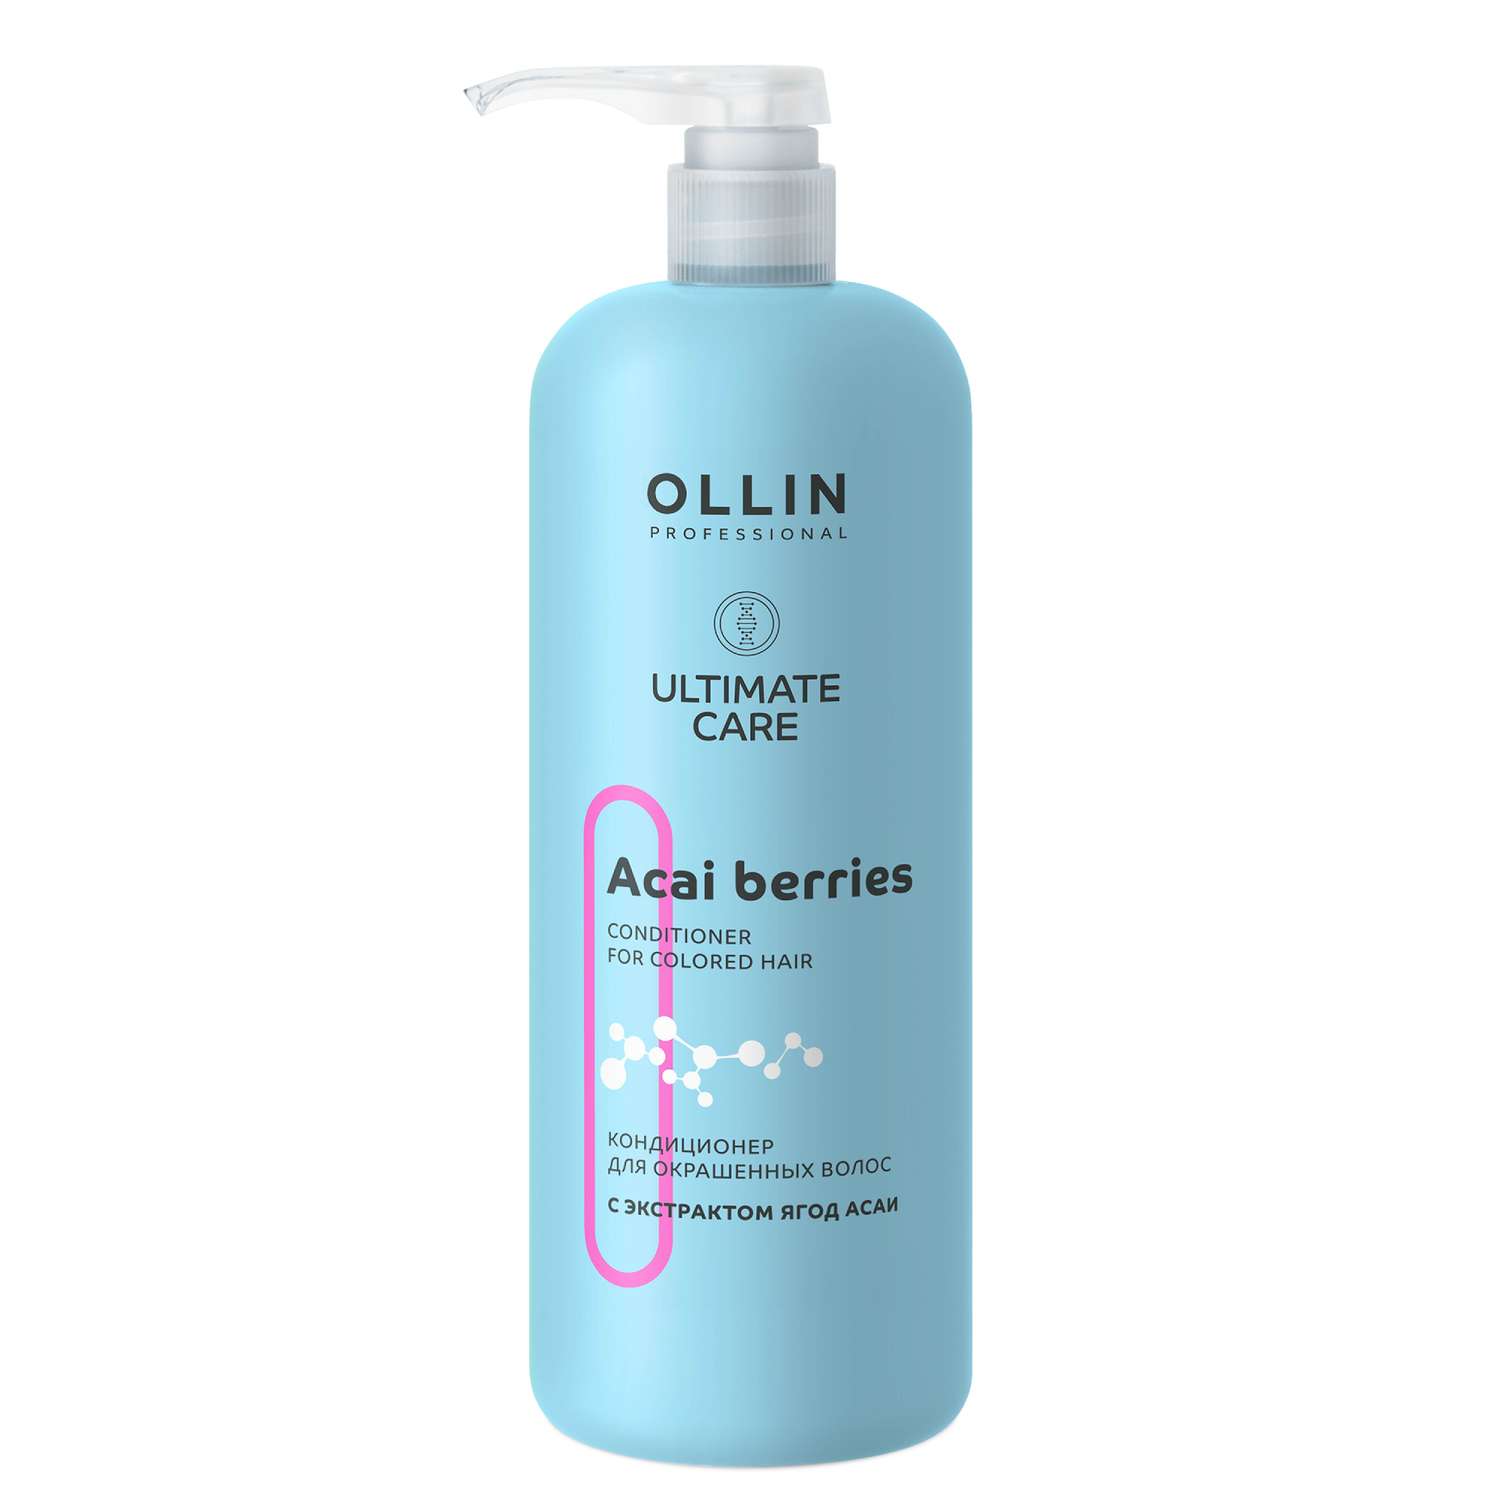 Кондиционер Ollin ultimate care для окрашенных волос с экстрактом ягод асаи 1000 мл - фото 1